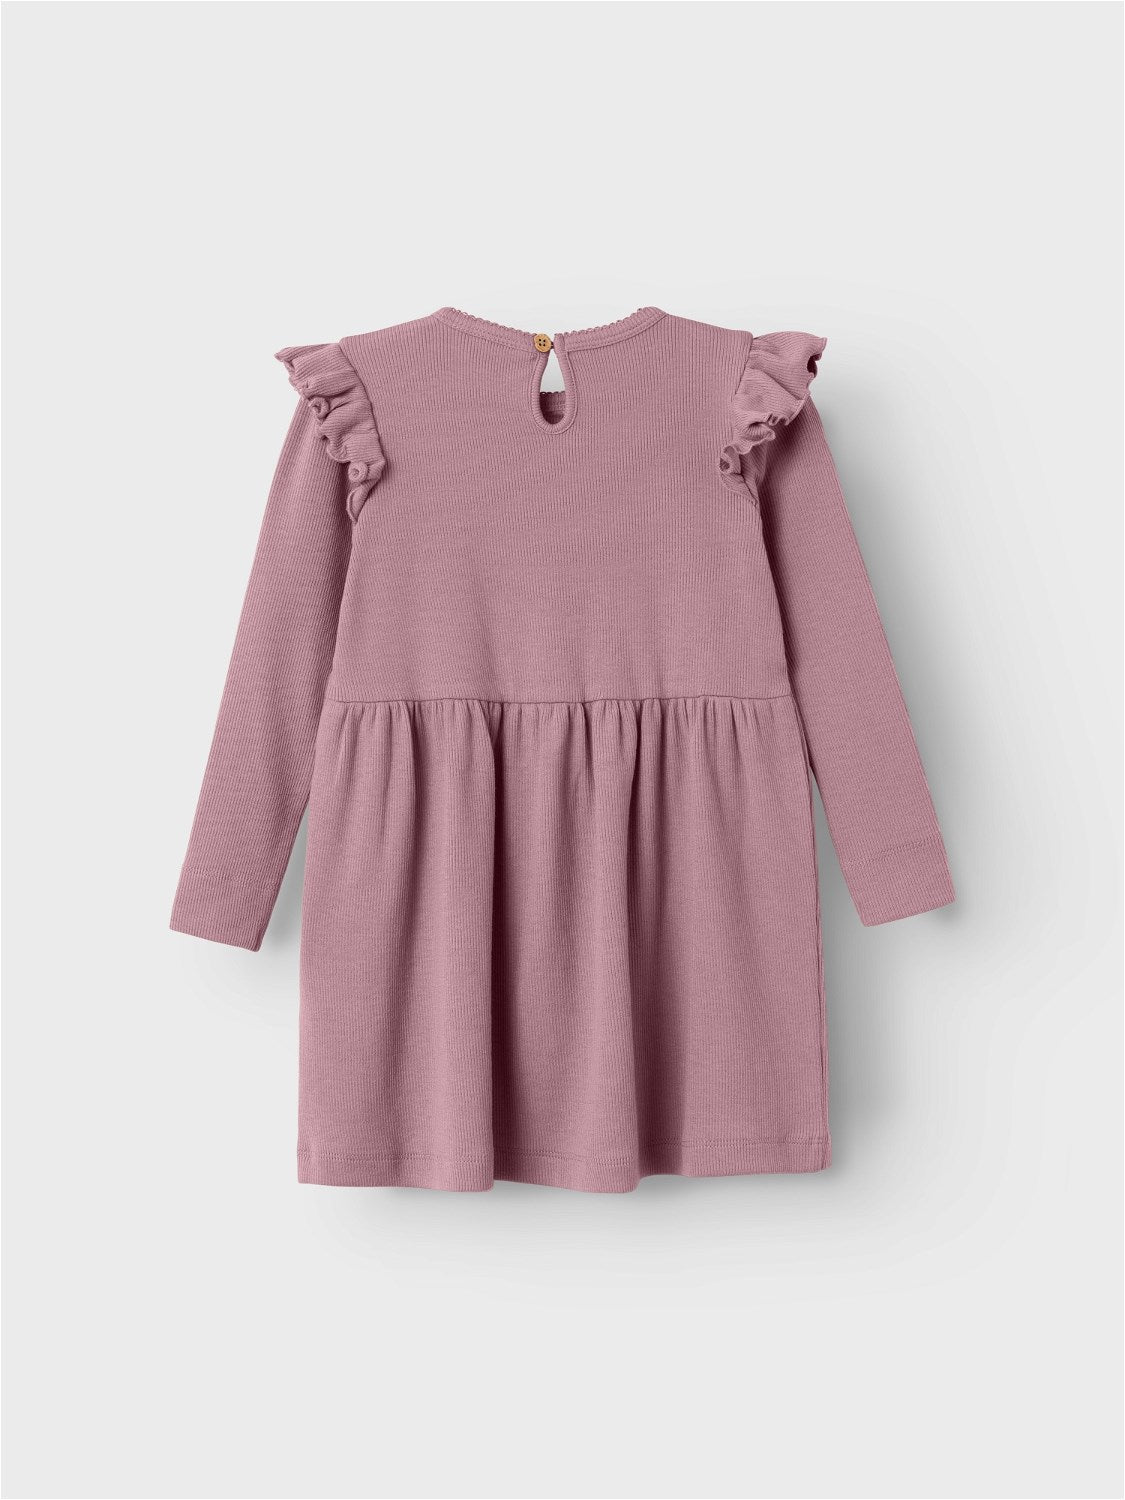 Lil Atelier Mini | Gago Dia Dress - Nostalgia Rose